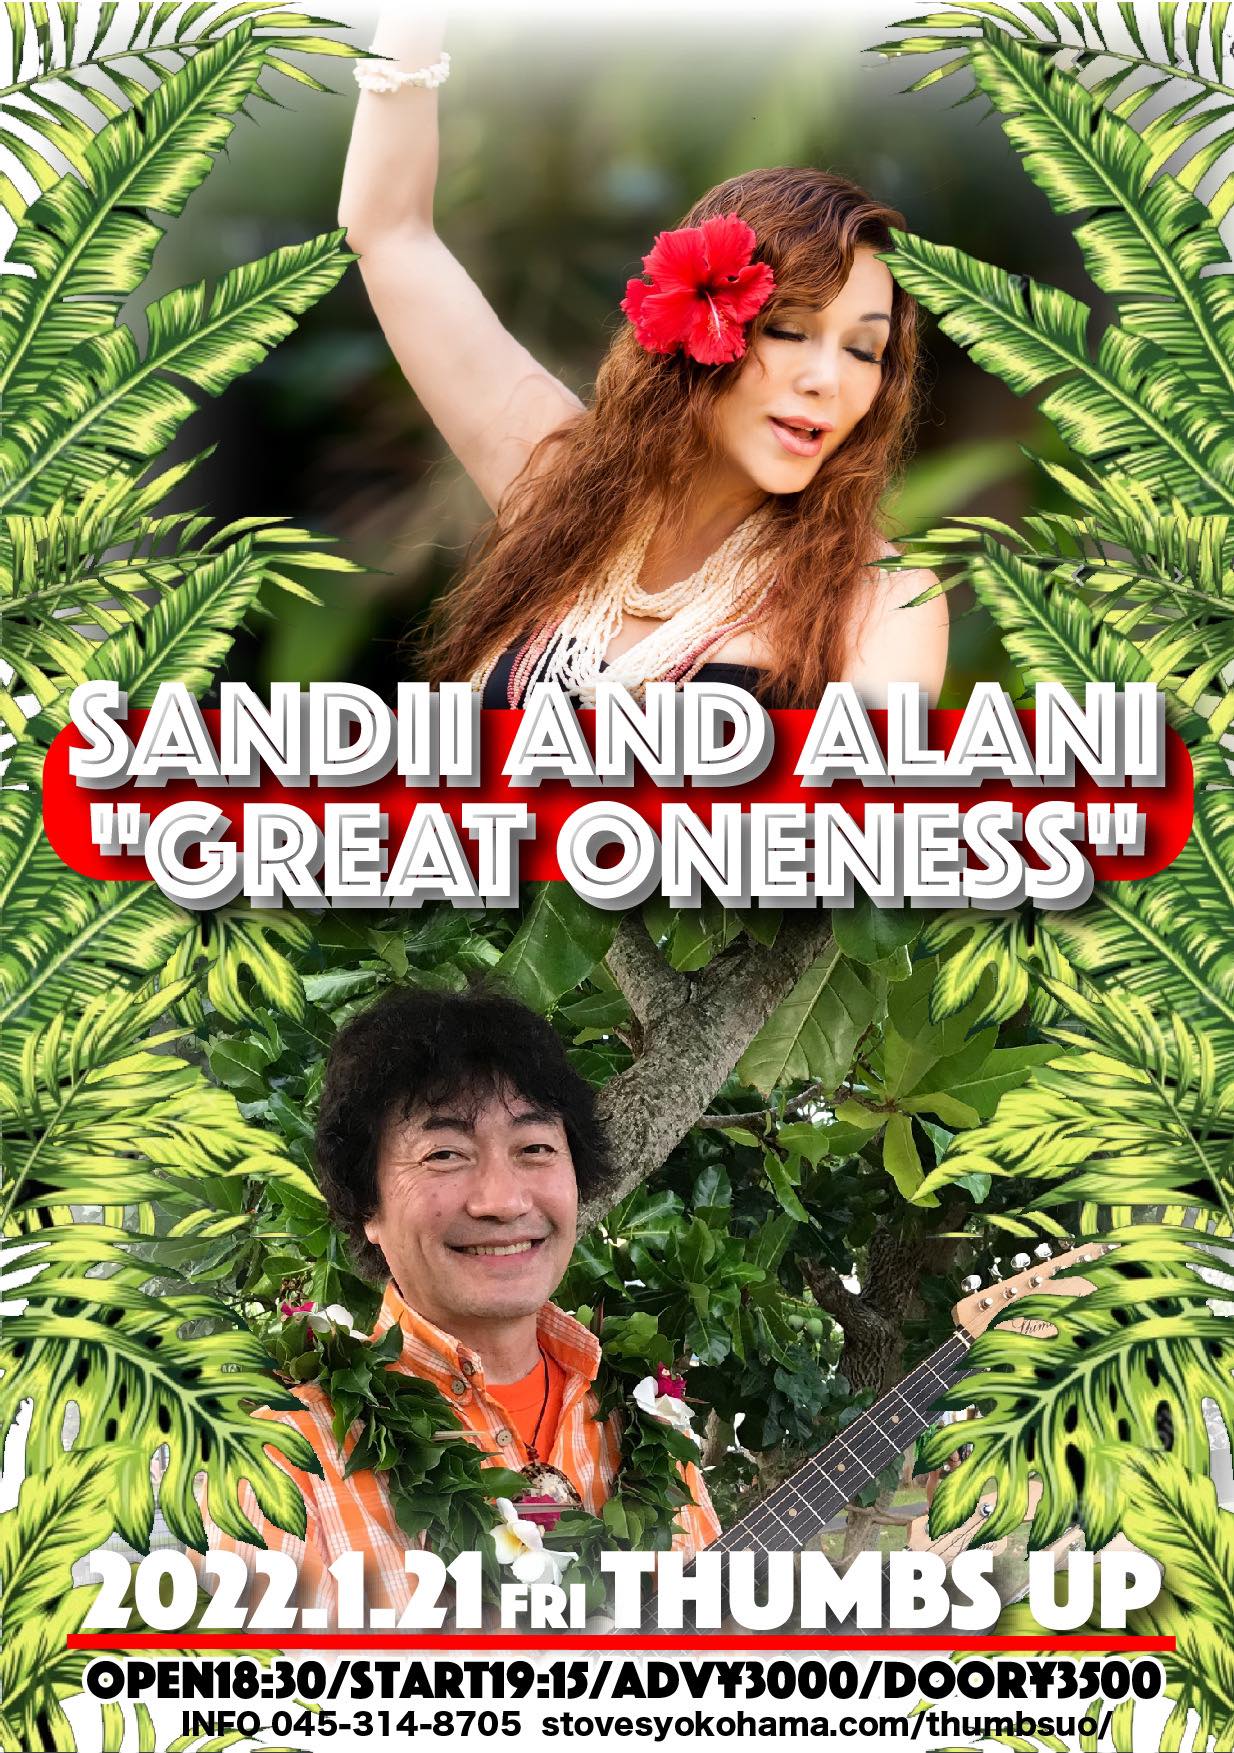 神奈川 SANDII AND ALANI "GREAT ONENESS" @ Thumbs Up | 名古屋市 | 愛知県 | 日本